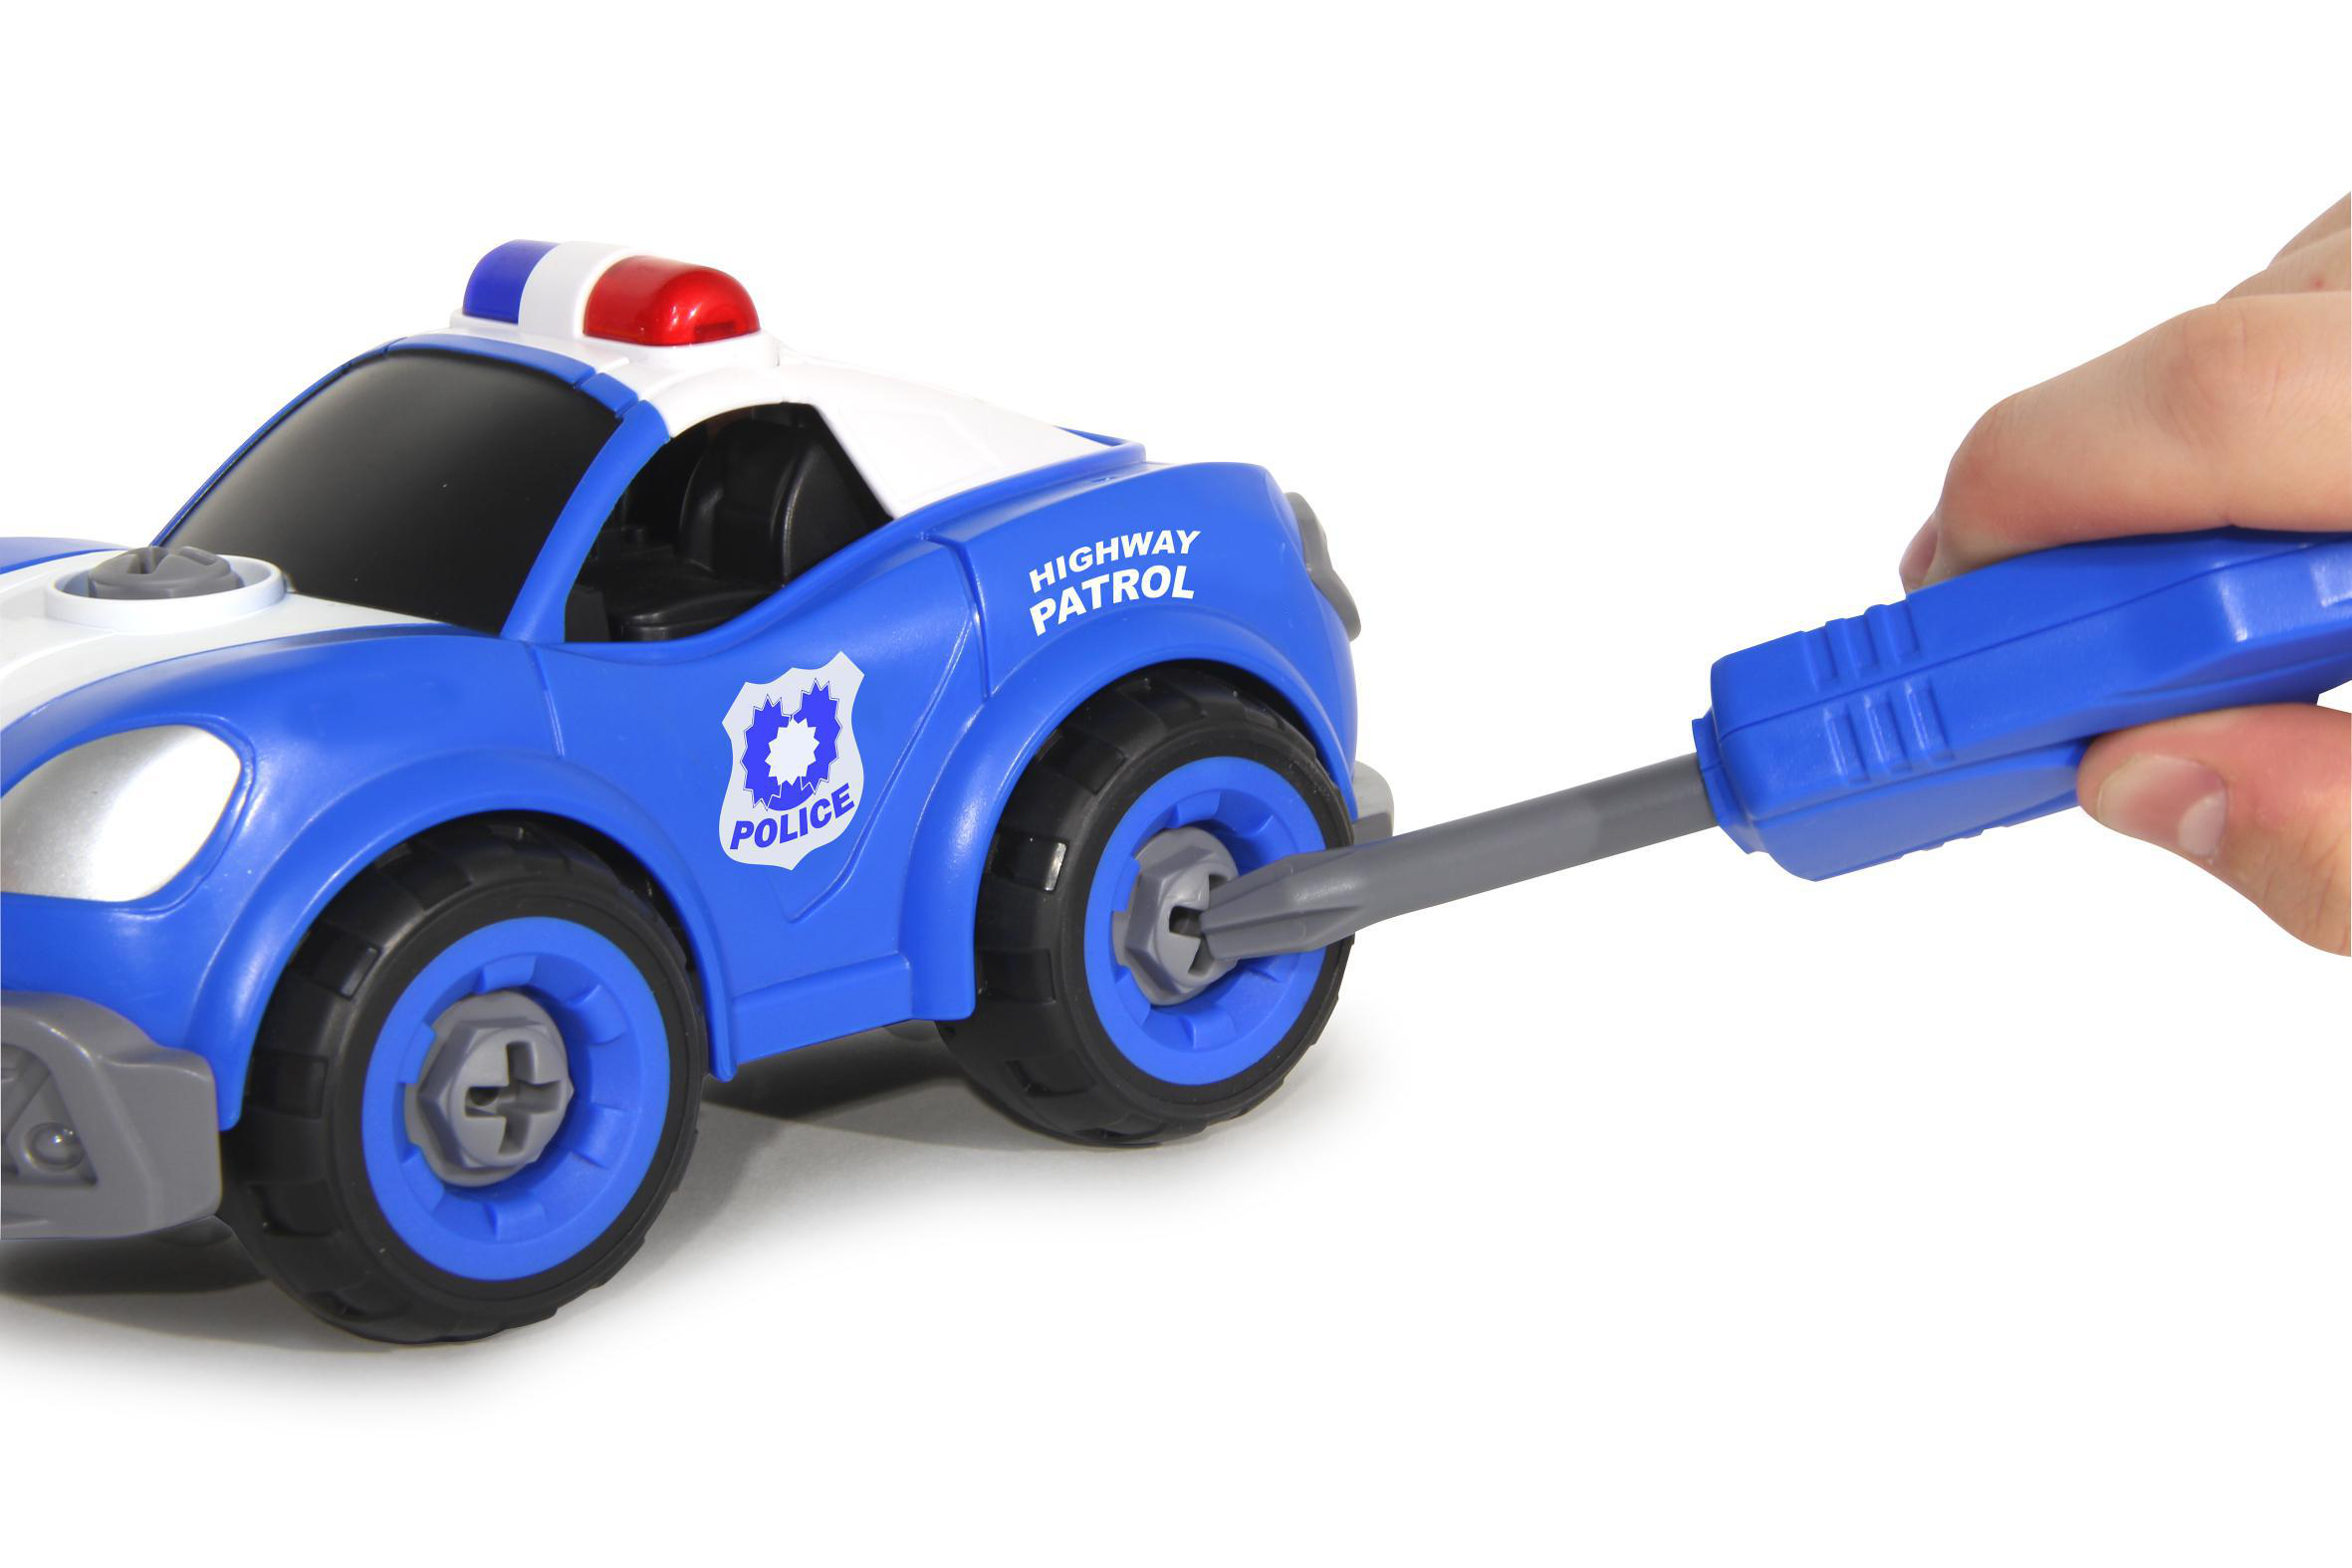 Polizeiauto First Kit Blau Spieleinsatzfahrzeuge, Akkuschrauber mit RC 22teilig JAMARA